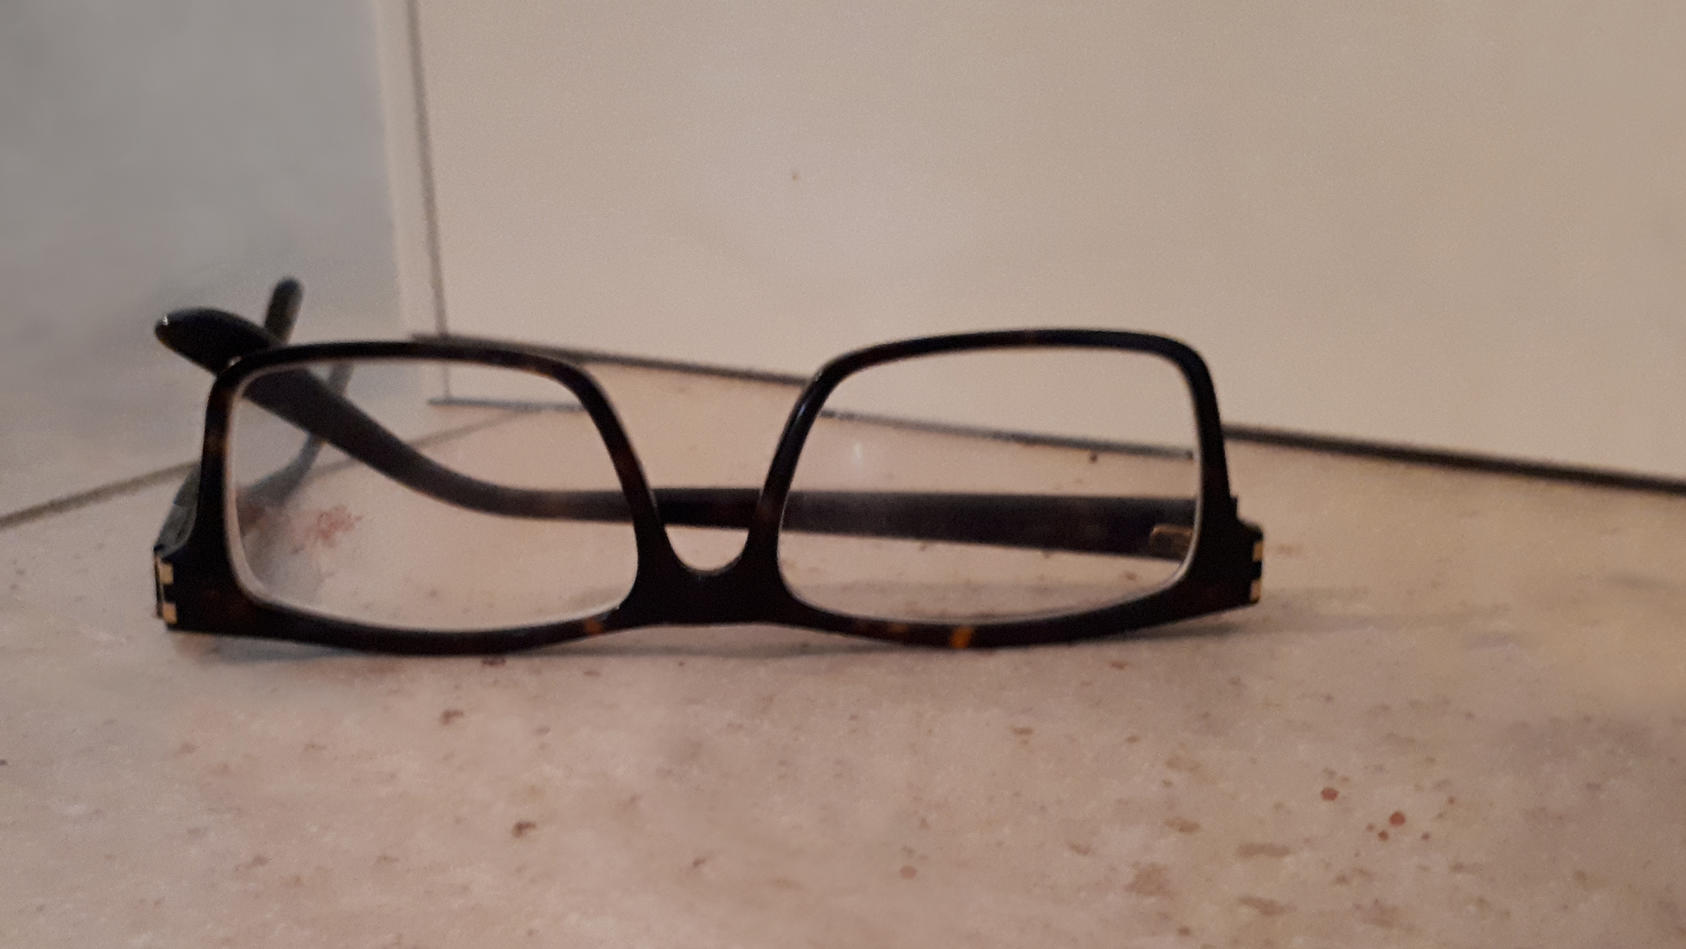 Diese Brille hat der Räuber am Tatort zurückgelassen.